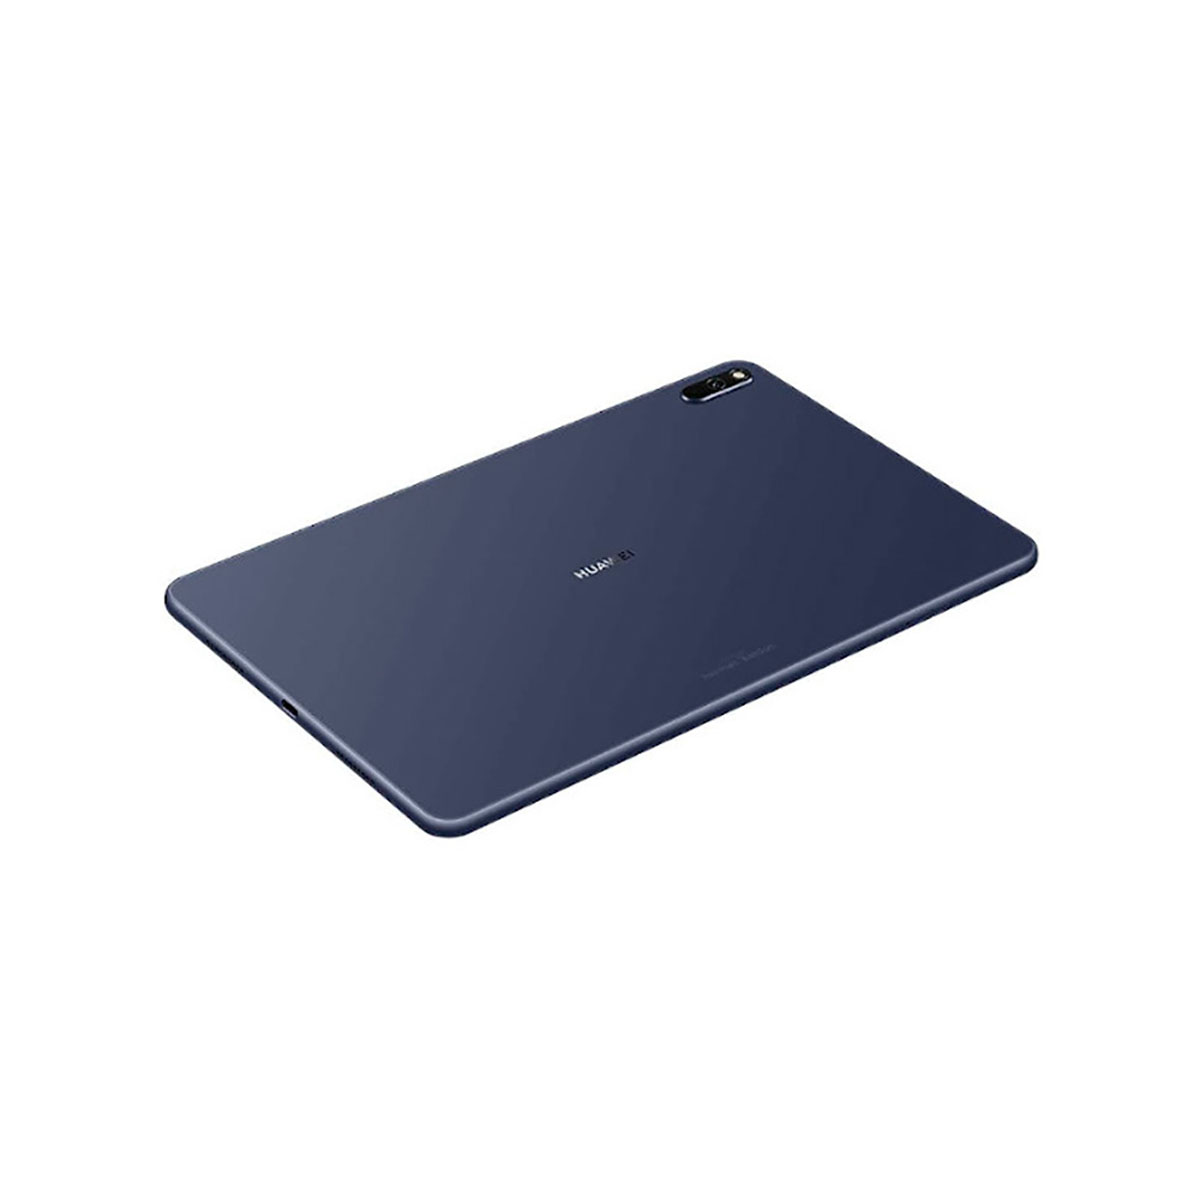 HUAWEI MatePad, Tablet, 128 GB, Grau Zoll, 10,4